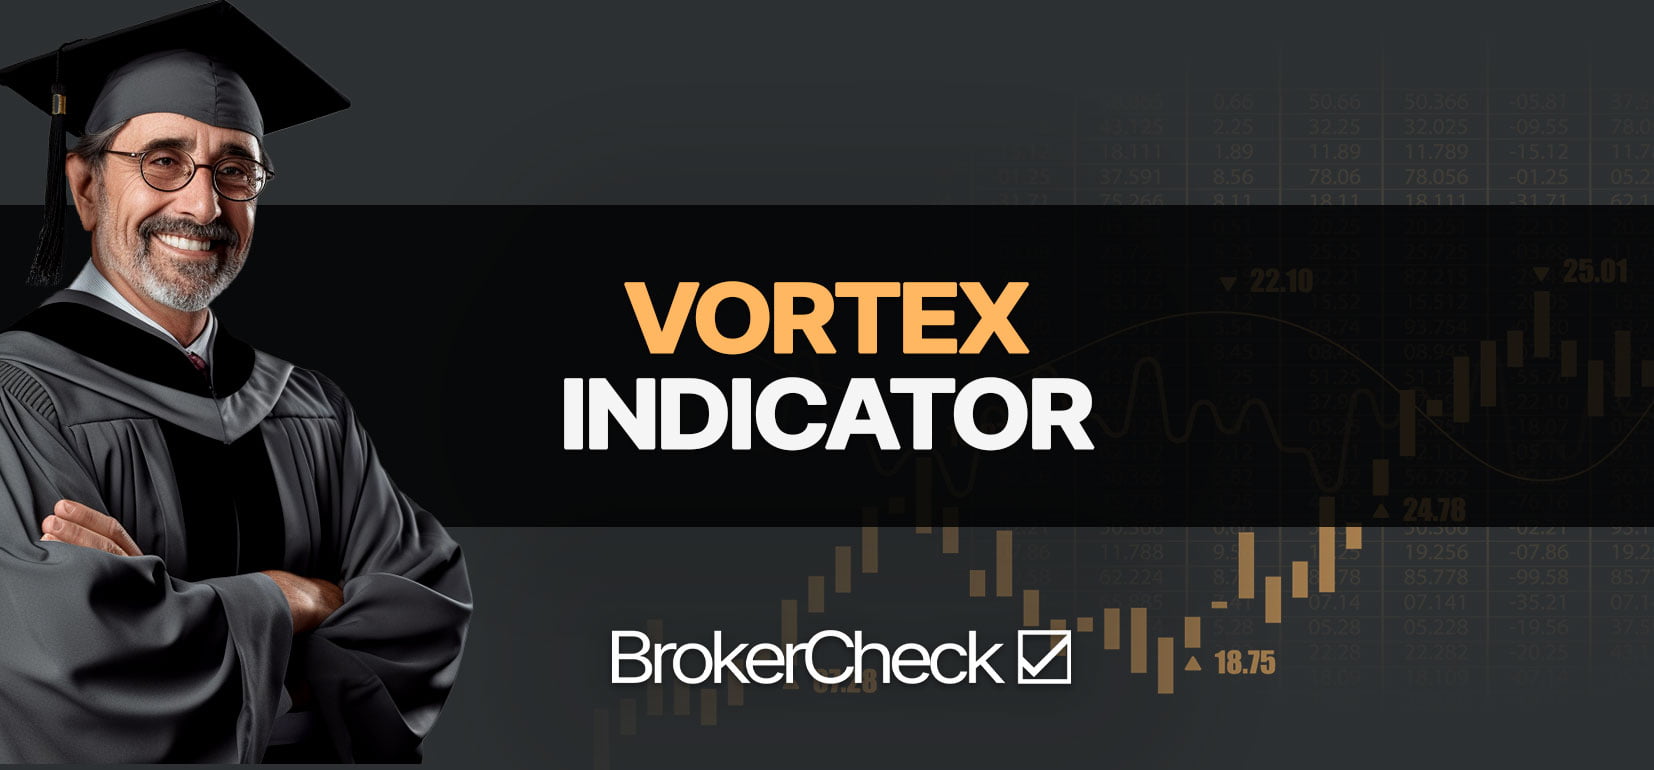 Bedste Vortex-indikatorindstillinger og -strategi